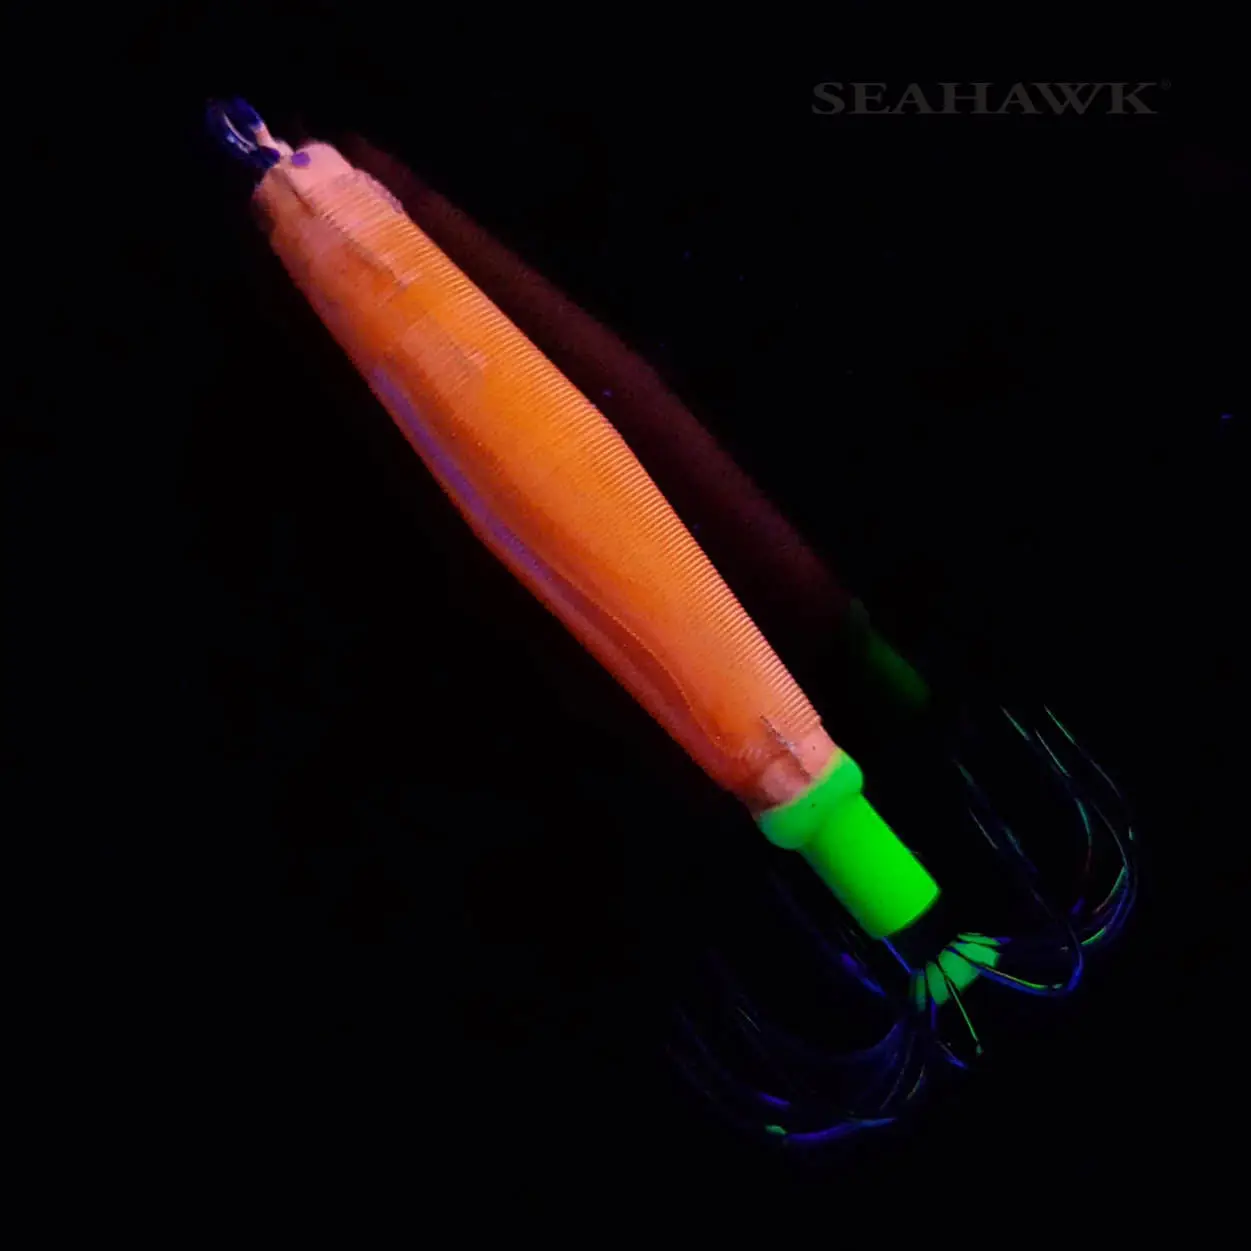 Seahawk Squid Jig / Skirt - Wide Reef Luminous Squid Jig